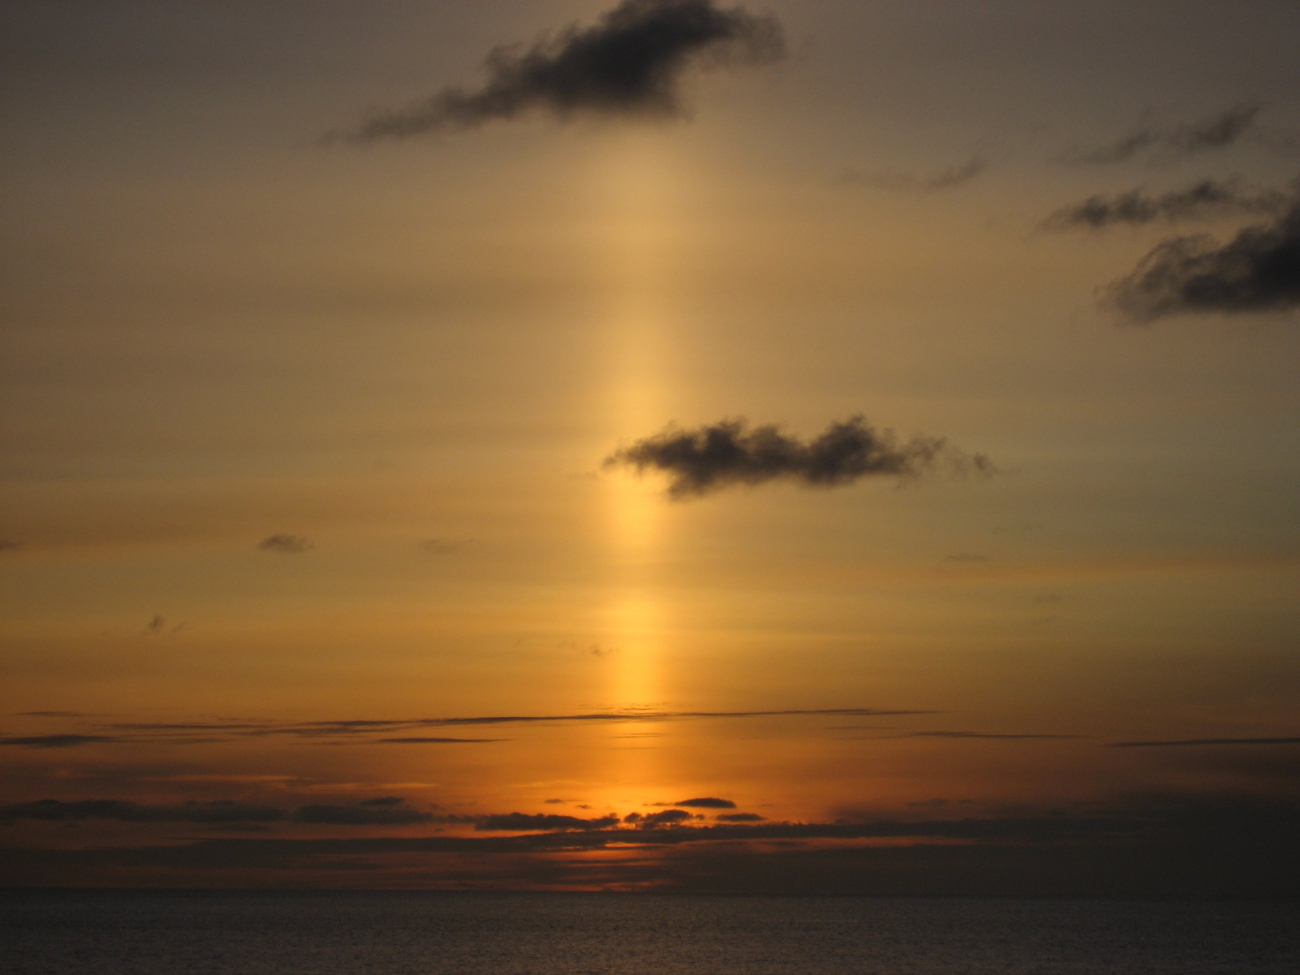 A sun pillar following the setting of the sun